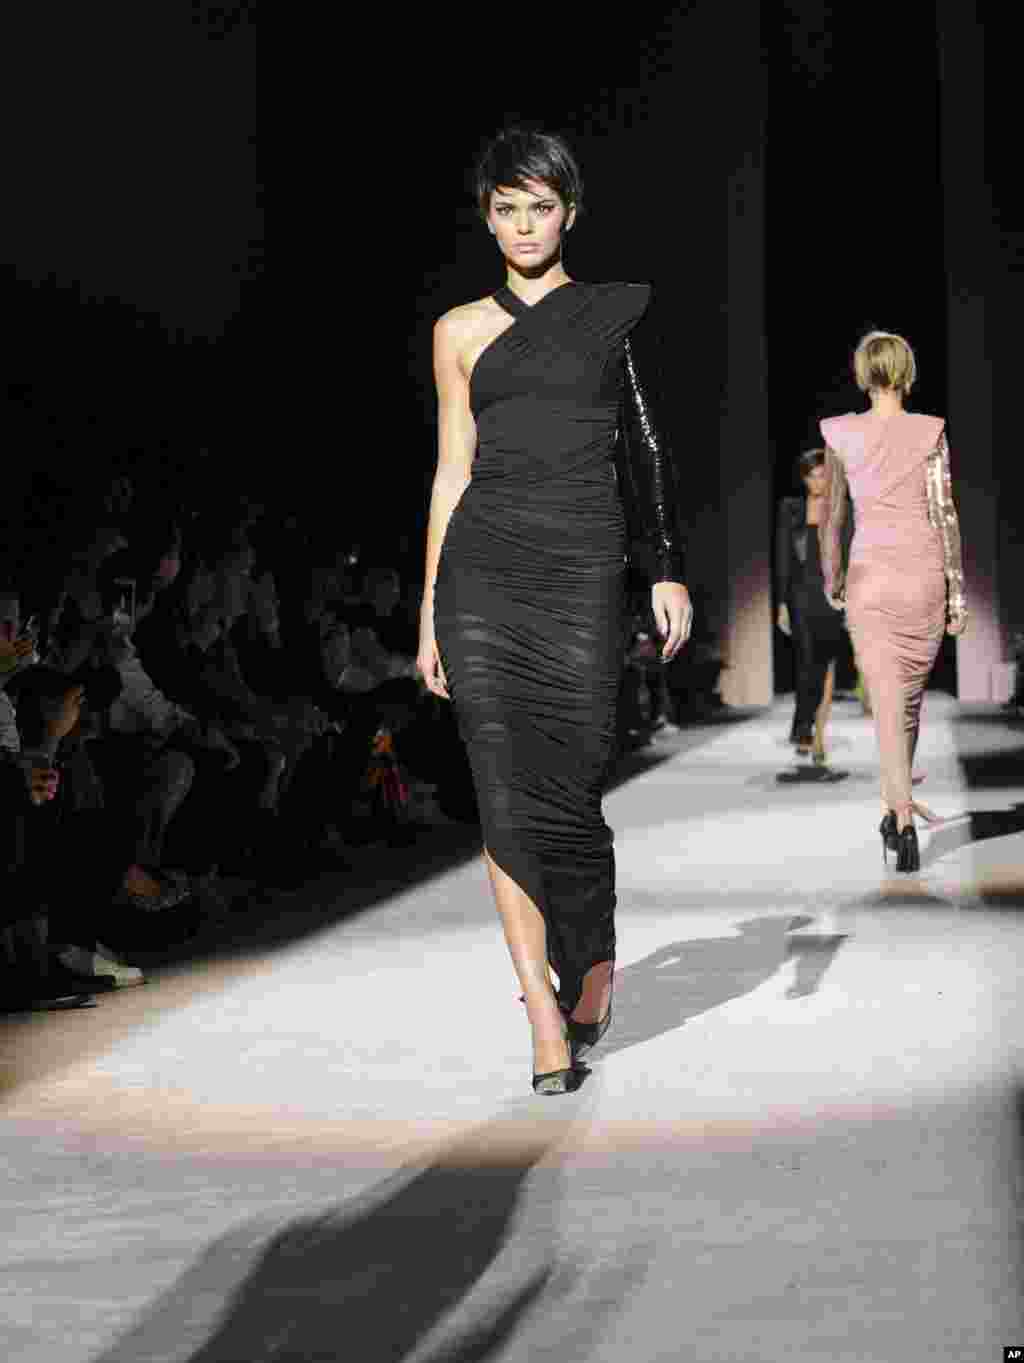 حضور کندال جنر خواهر کیم کارداشیان بعنوان یکی از مدل ها در هفته مد نیویورک